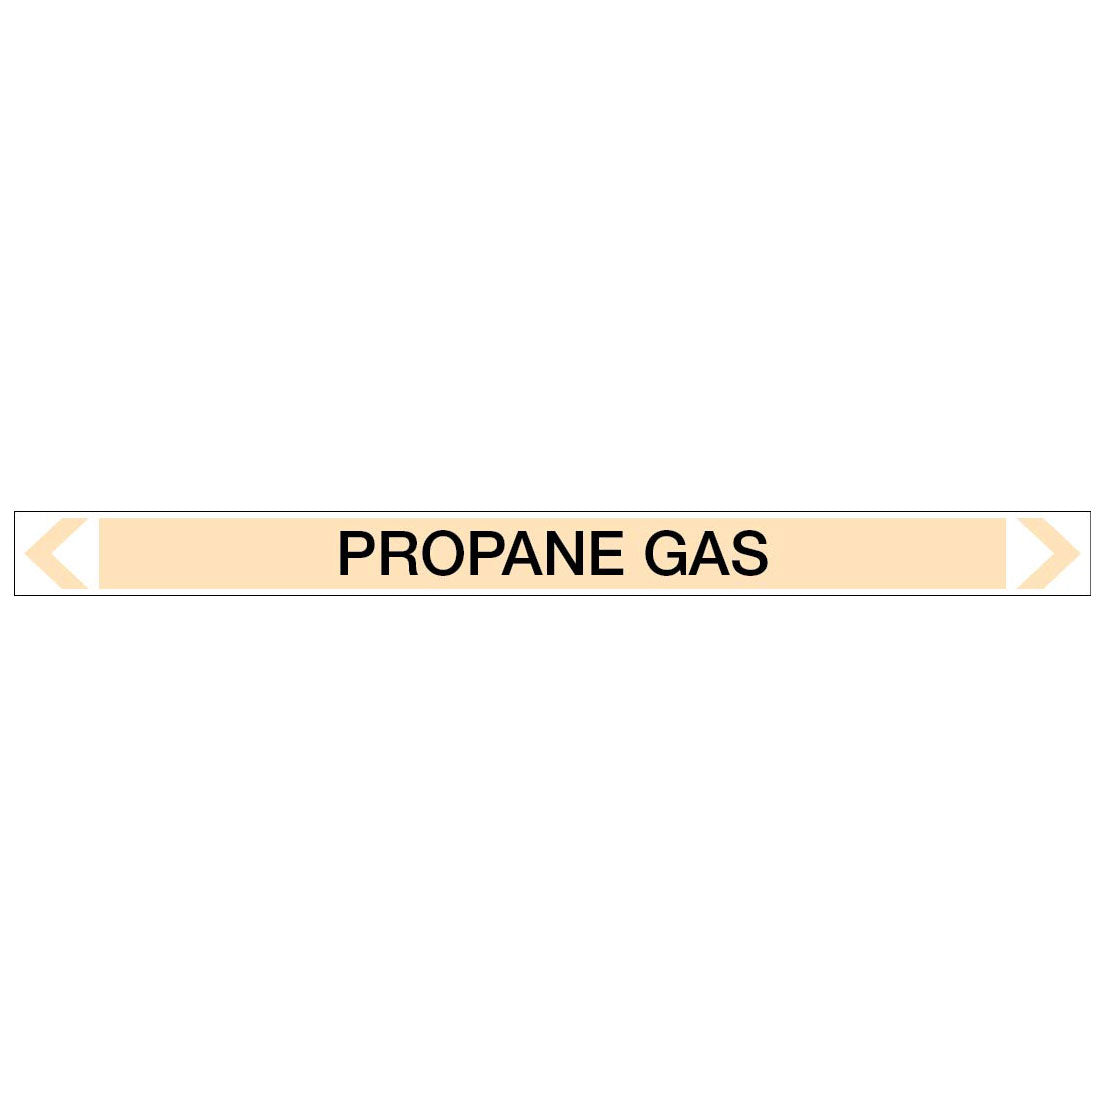 Gases - Propane Gas - Pipe Marker Sticker